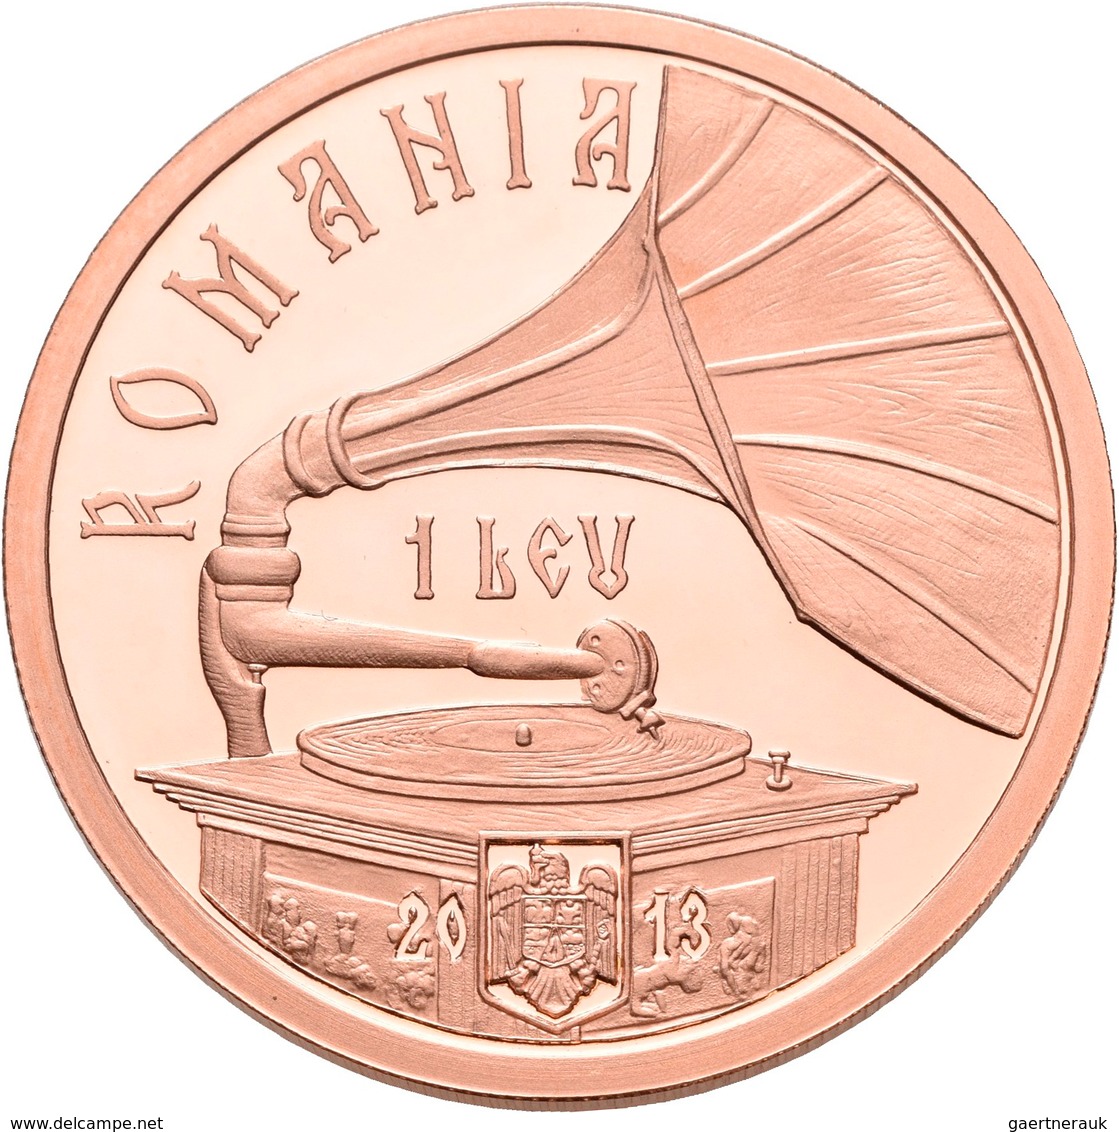 Rumänien: 1 Leu 2013, 100. Geburtstag Maria Tanase. KM# N.b. Verkupferte Tombac. Auflage Nur 250 Stü - Roemenië